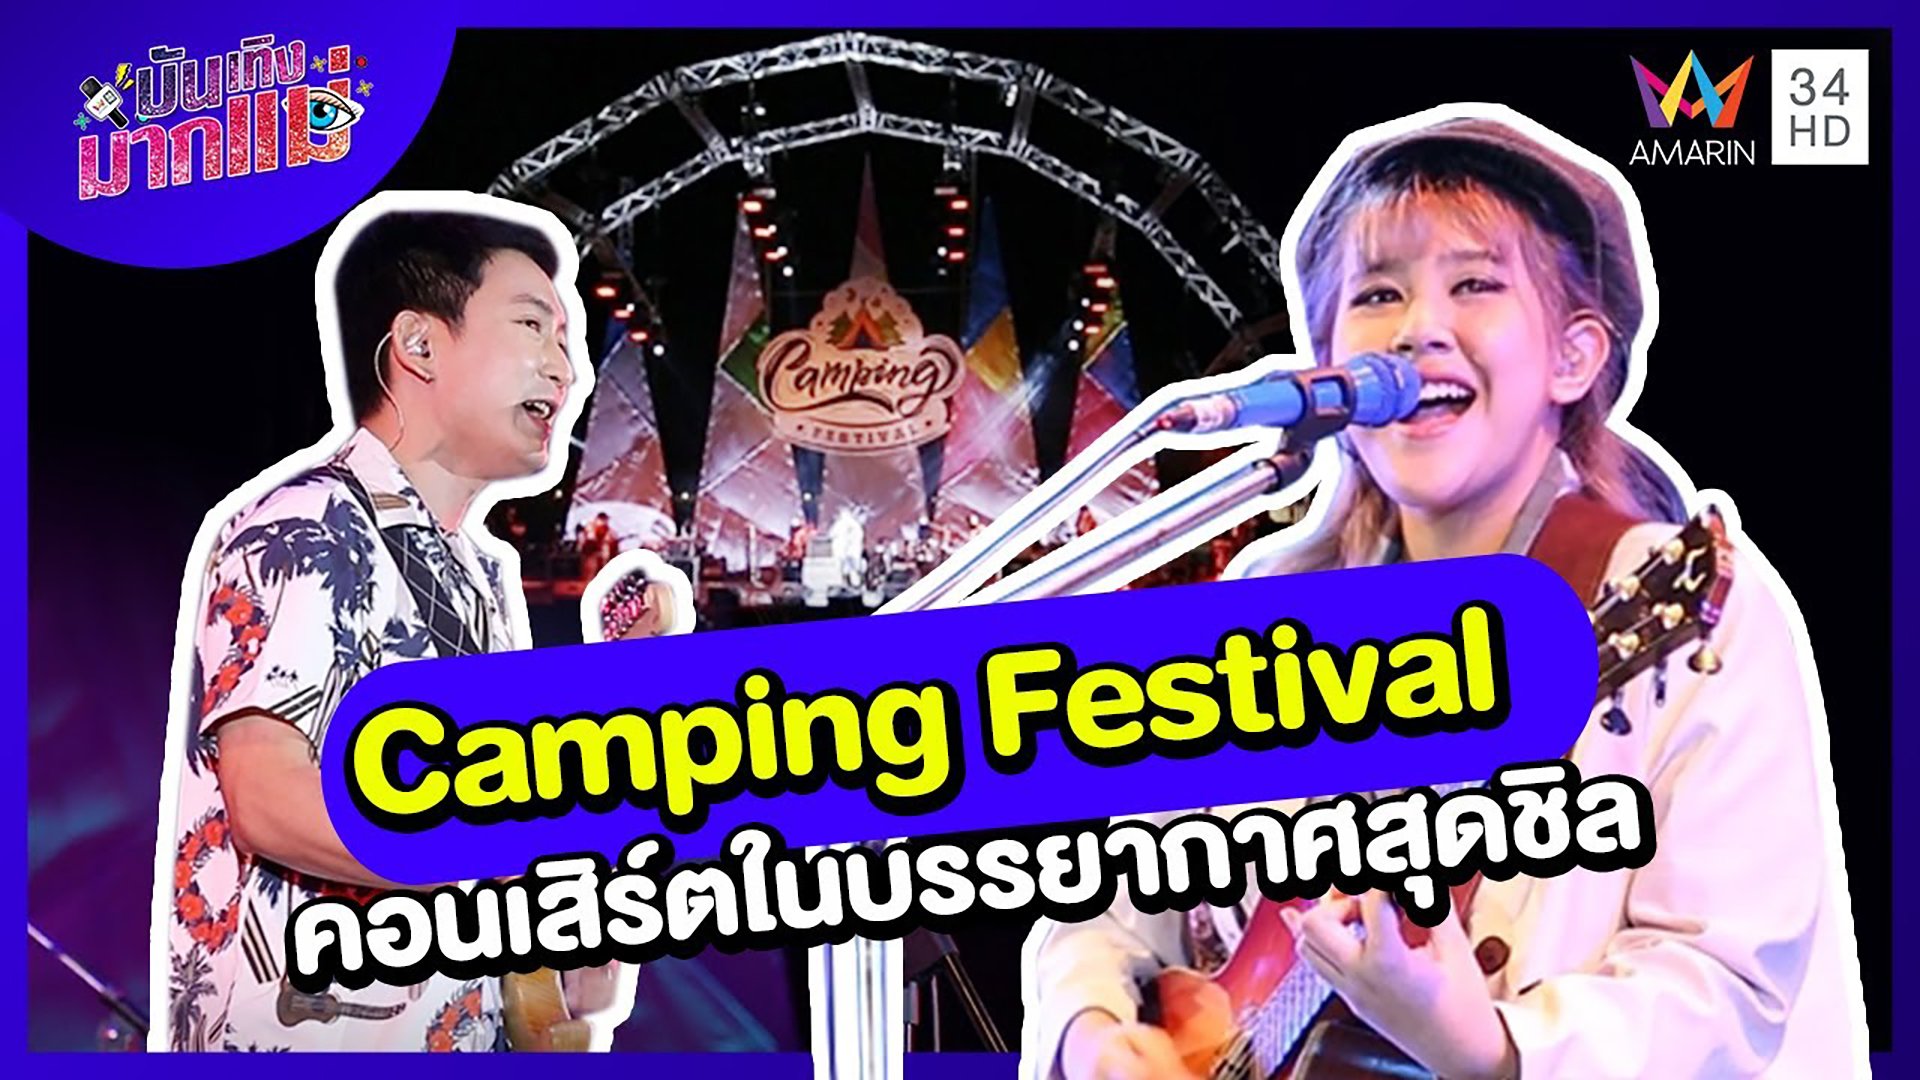 บันเทิงมากแม่ | EP.39 Camping Festival คอนเสิร์ตในบรรยากาศสุดชิล | 3 ธ.ค. 64 | AMARIN TVHD34